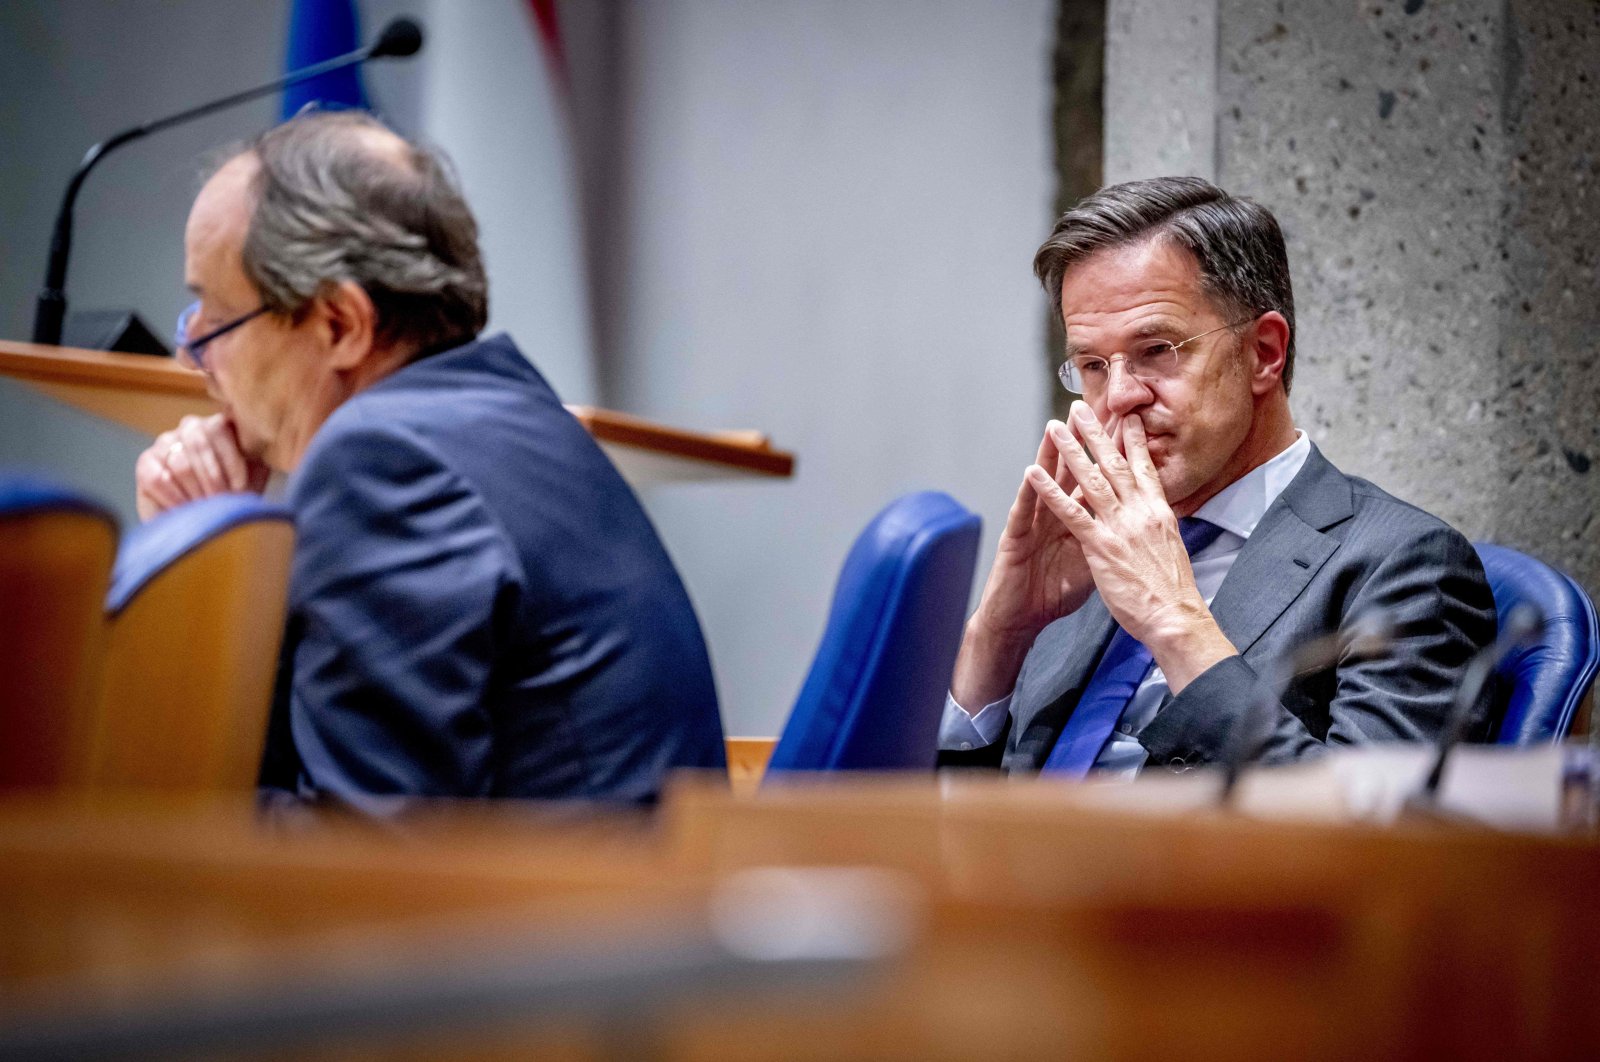 Pemerintah pimpinan PM Belanda Rutte runtuh karena kebijakan migrasi